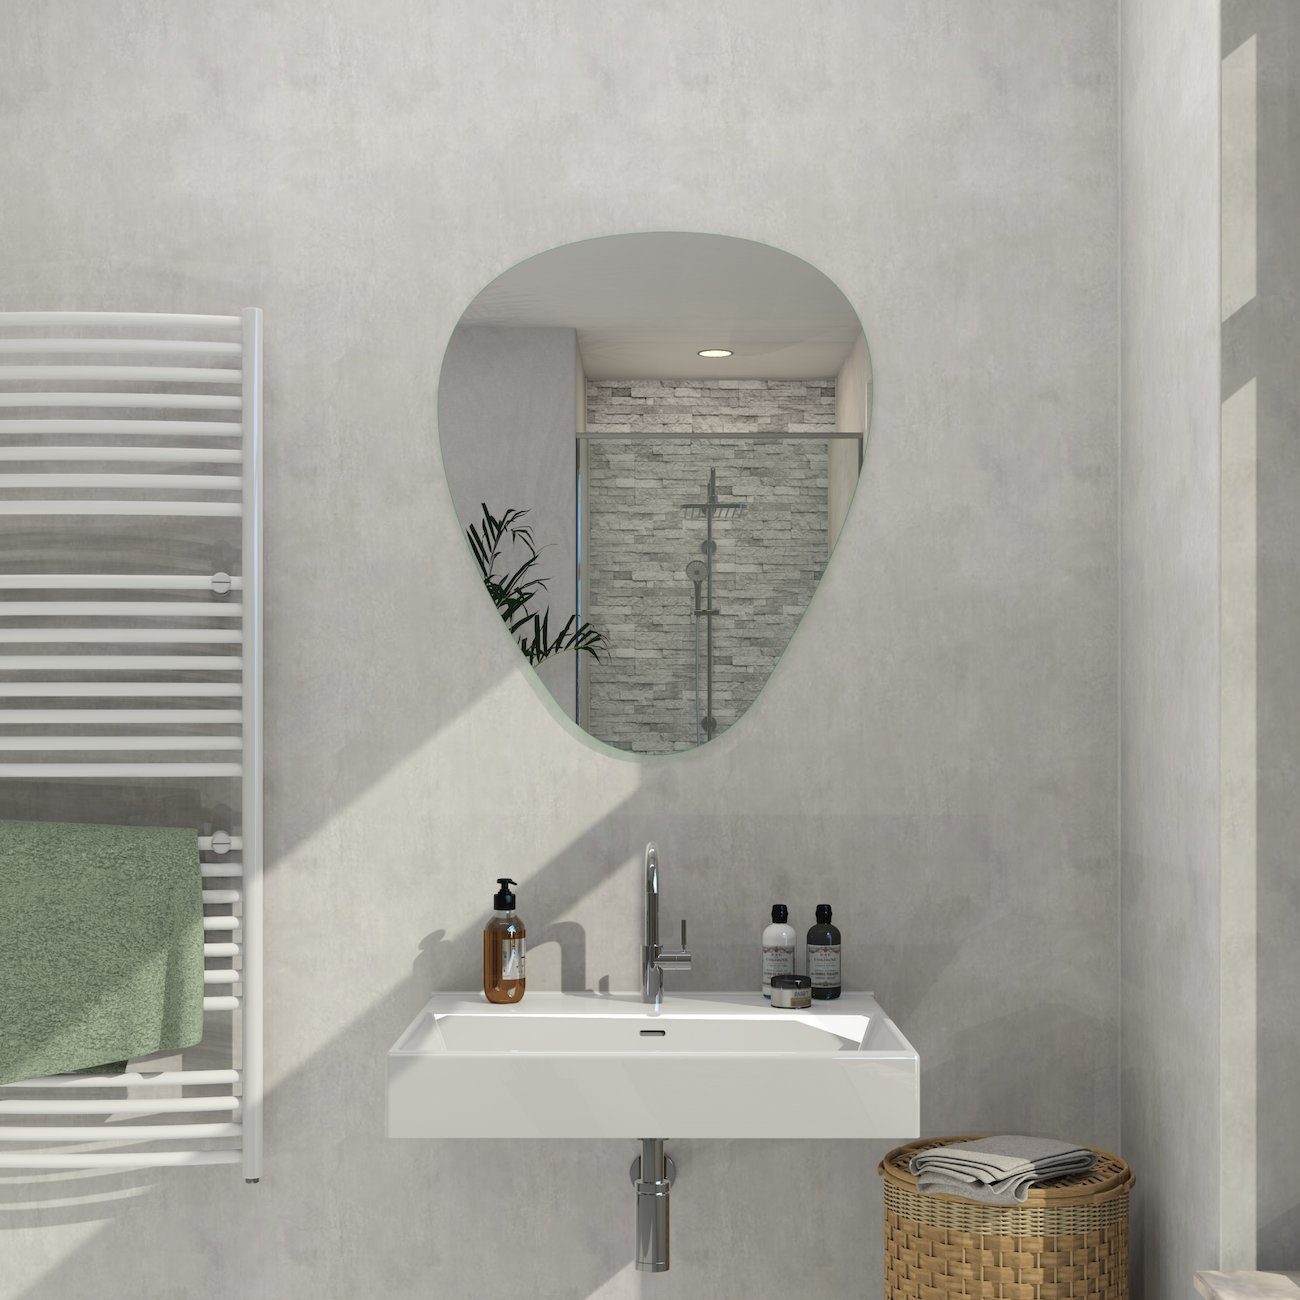 S'AFIELINA Wandspiegel Dekospiegel asymmetrisch Wandspiegel Mehrere  Installationsmethoden, HD-Spiegel für Badezimmer, Wohnzimmer, Flur